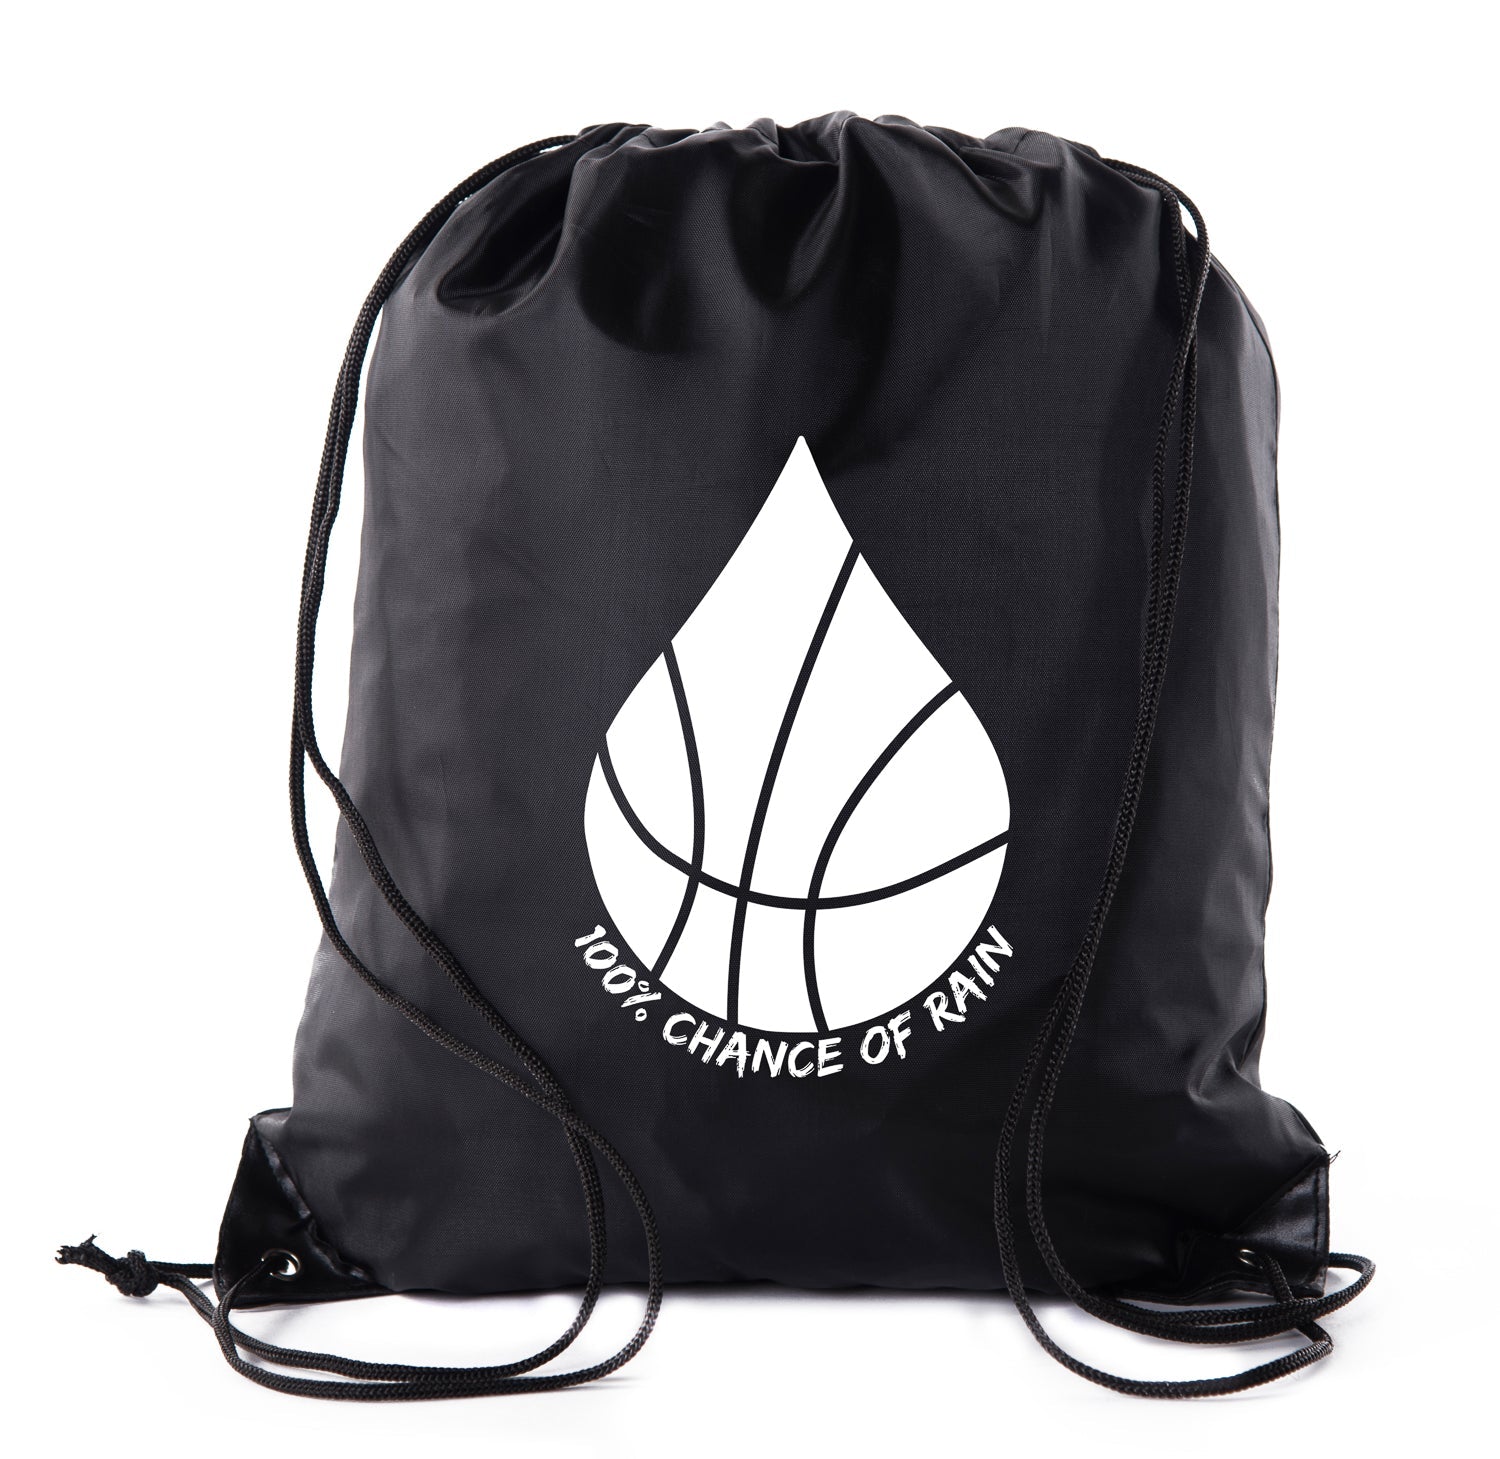 100% Chance of Rain Basketball Polyester Drawstring Bag